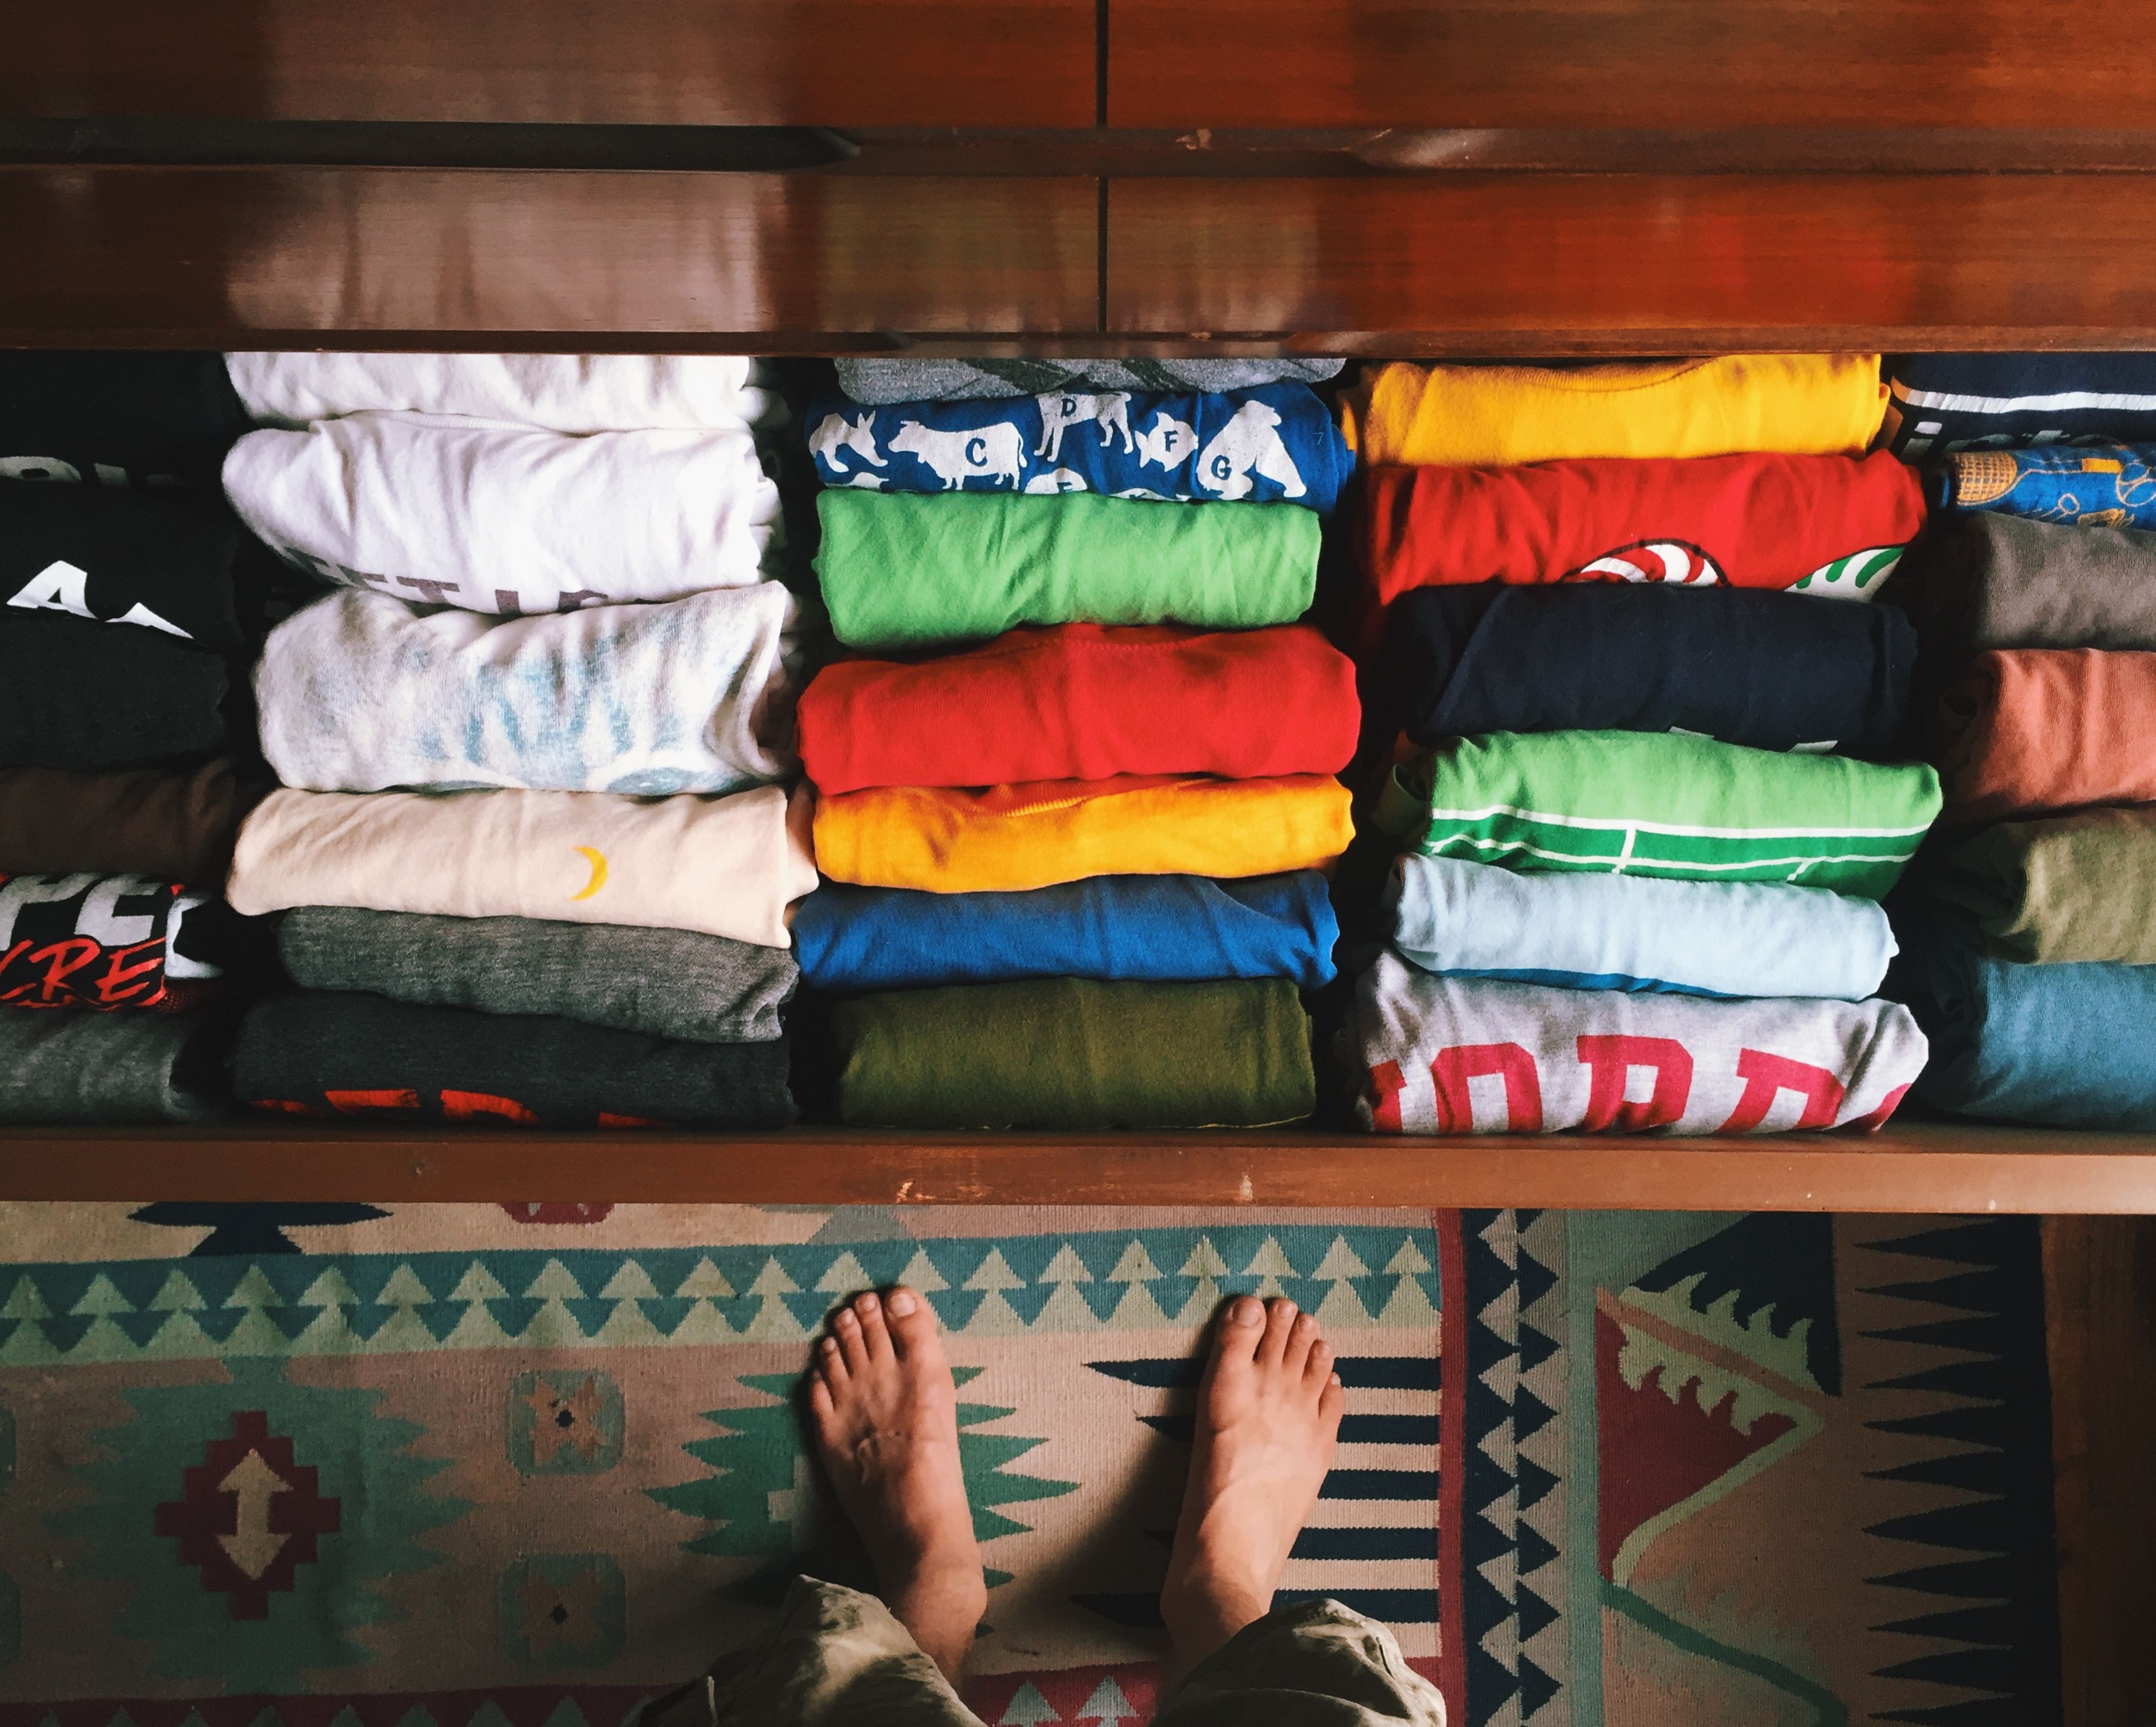 20 pasos para organizar tu armario con éxito